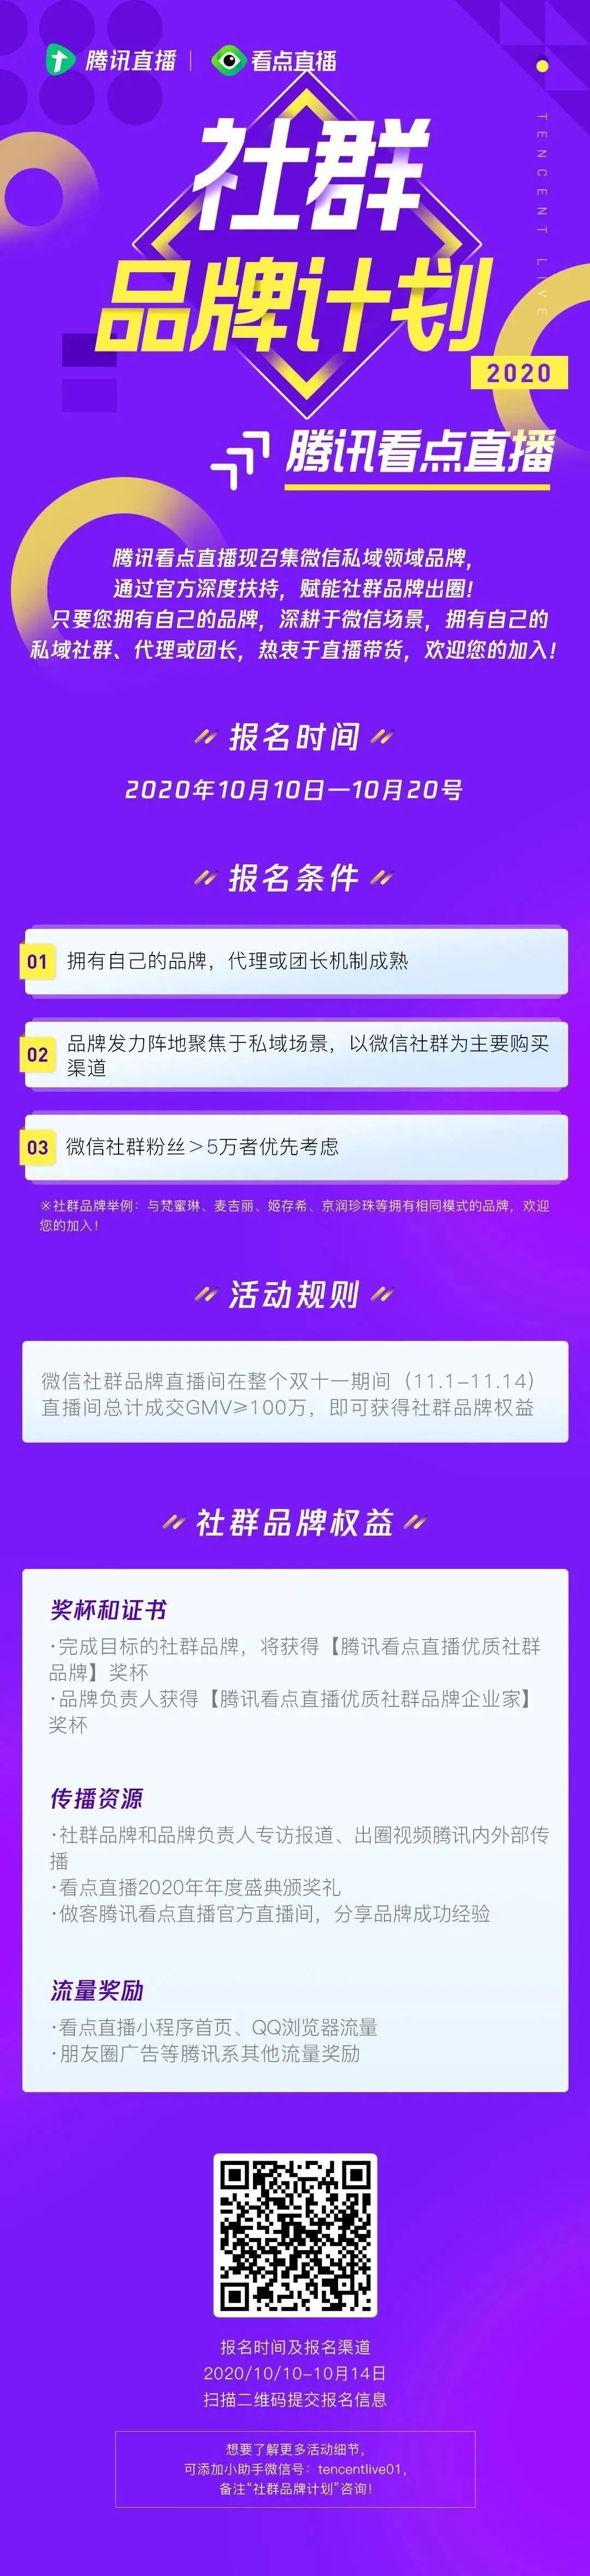 47名主播被列入黑名单；<a href='https://www.zhouxiaohui.cn
' target='_blank'>腾讯直播</a>开启微信社群品牌扶持计划 | 新榜情报-第4张图片-周小辉博客